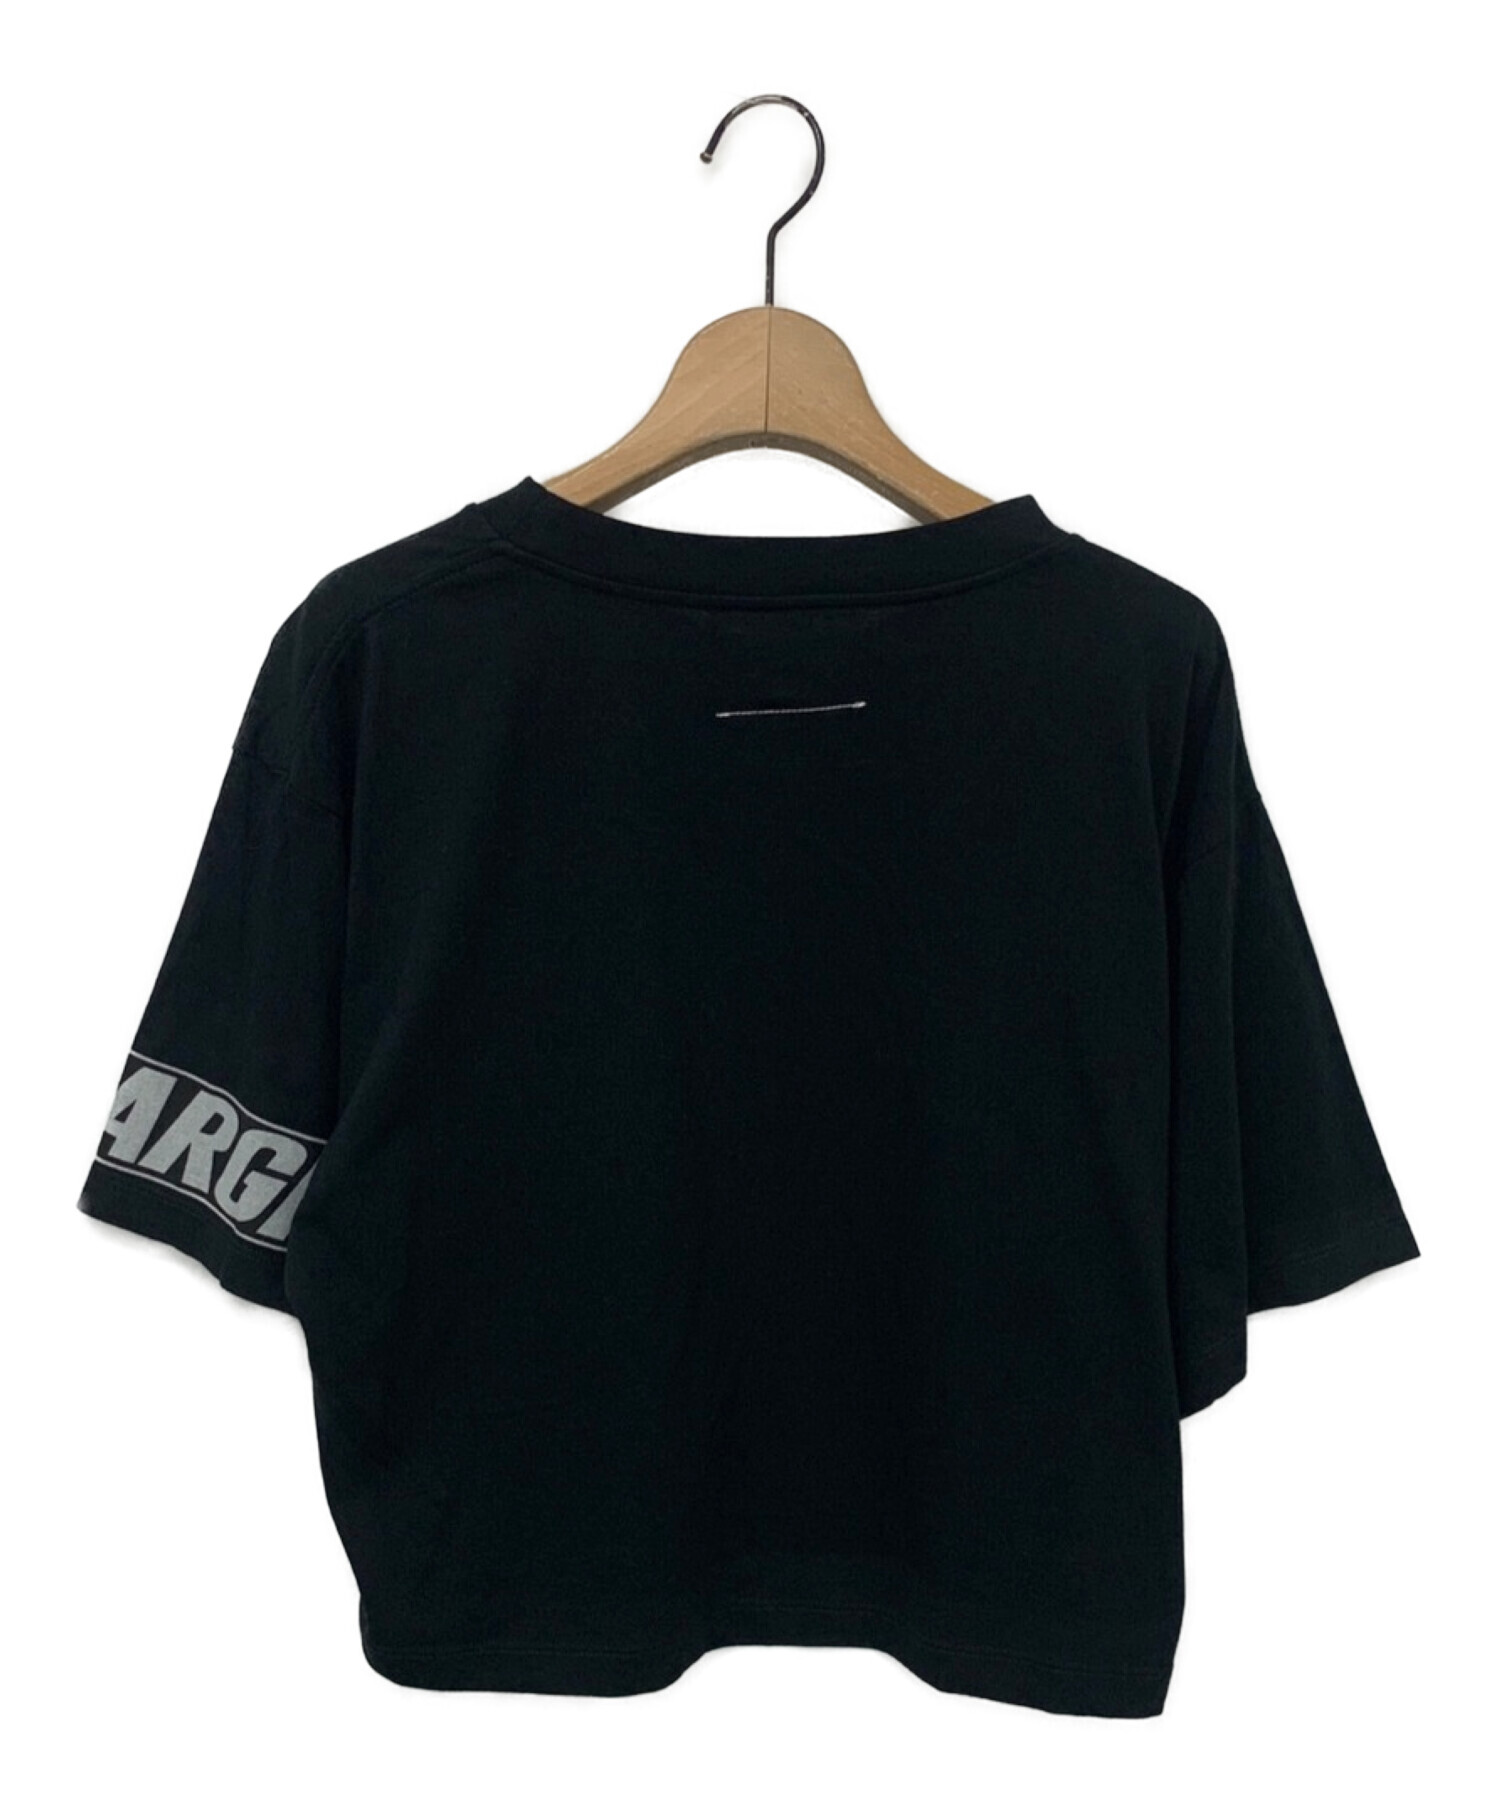 MM6 Maison Margiela (エムエムシックス メゾンマルジェラ) モトクロスロゴクロップドTシャツ ブラック サイズ:S